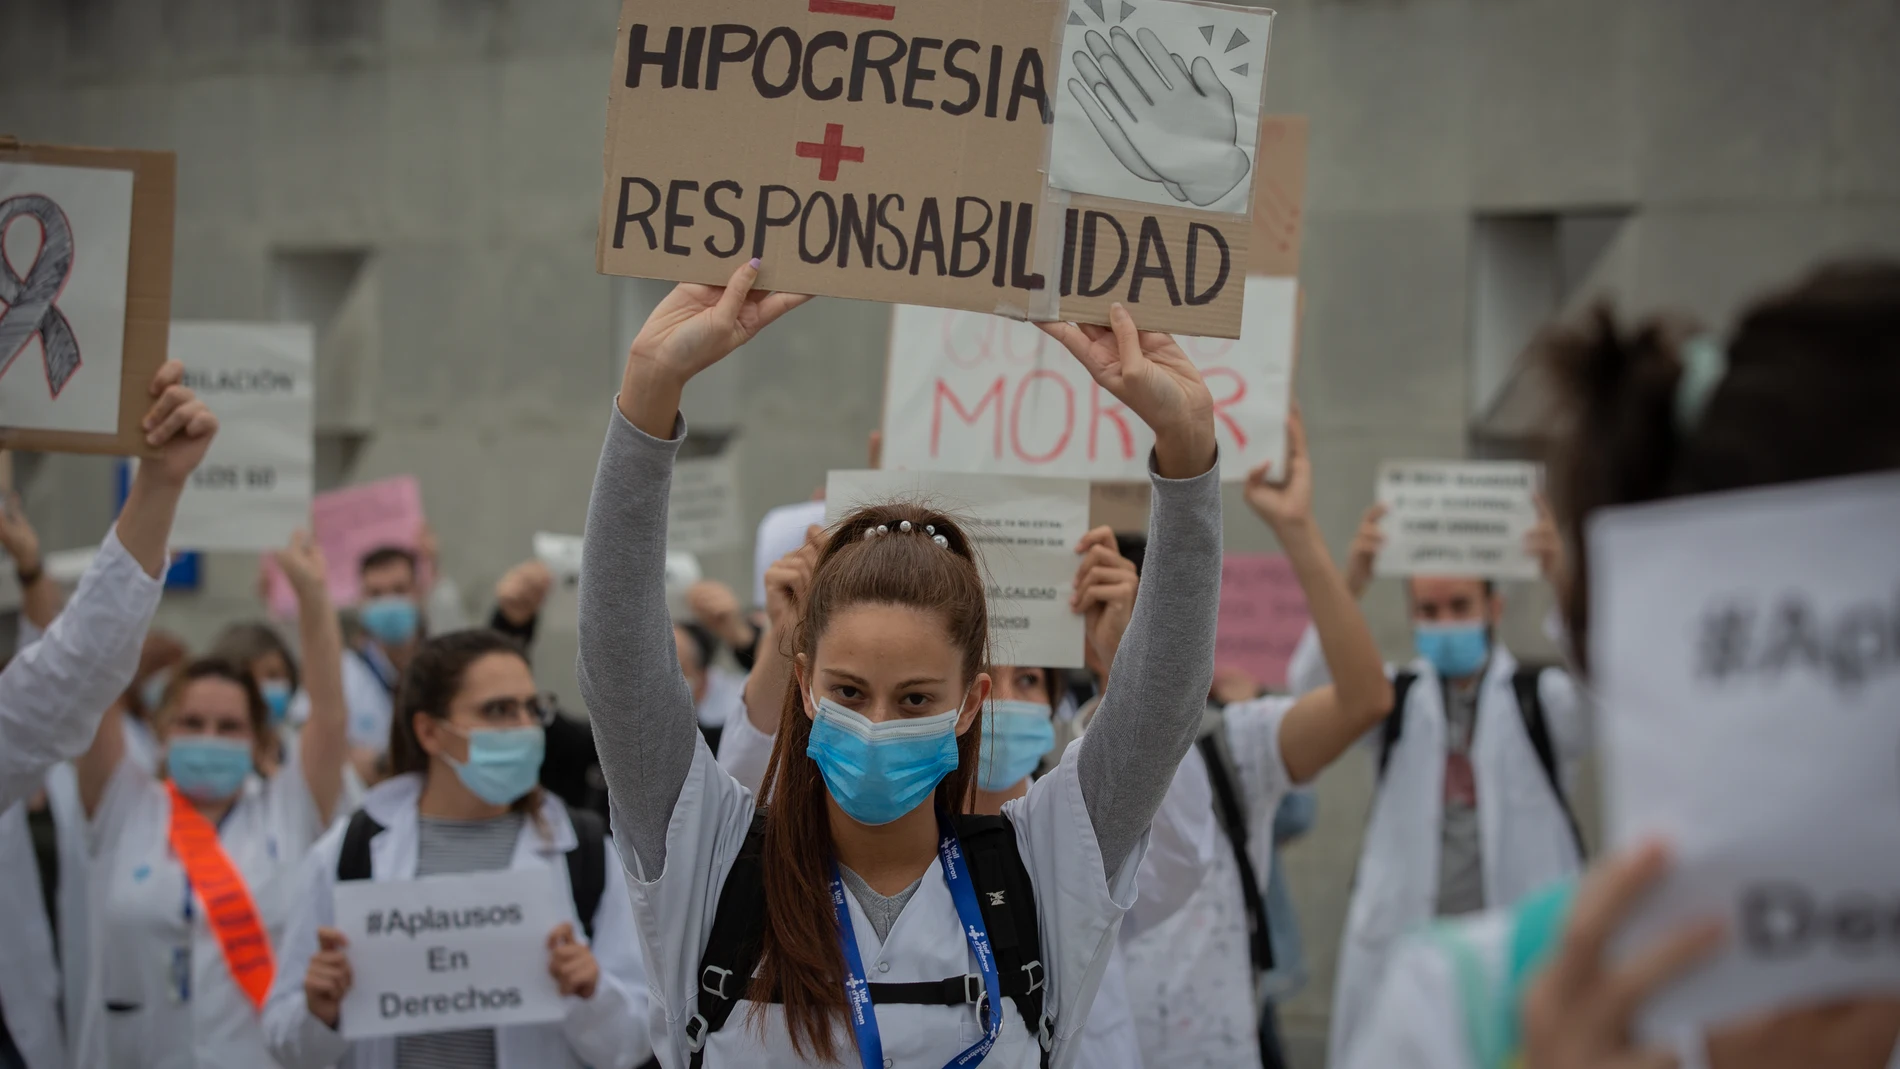 Una sanitaria sostiene un cartel que pide "Menos hipocresía y más responsabilidad", acompaña de decenas de miembros del personal sanitario protegidos con mascarilla, durante la concentración de sanitarios en el Día Internacional de la Enfermería a las puertas del Hospital Vall d'Hebron, en Barcelona (Catalunya, España), a 12 de mayo de 2020.12 MAYO 2020;BARCELONA;CATALUÑA;CONCENTRACION;ENFERMEROS;COVID-19David Zorrakino / Europa Press12/05/2020